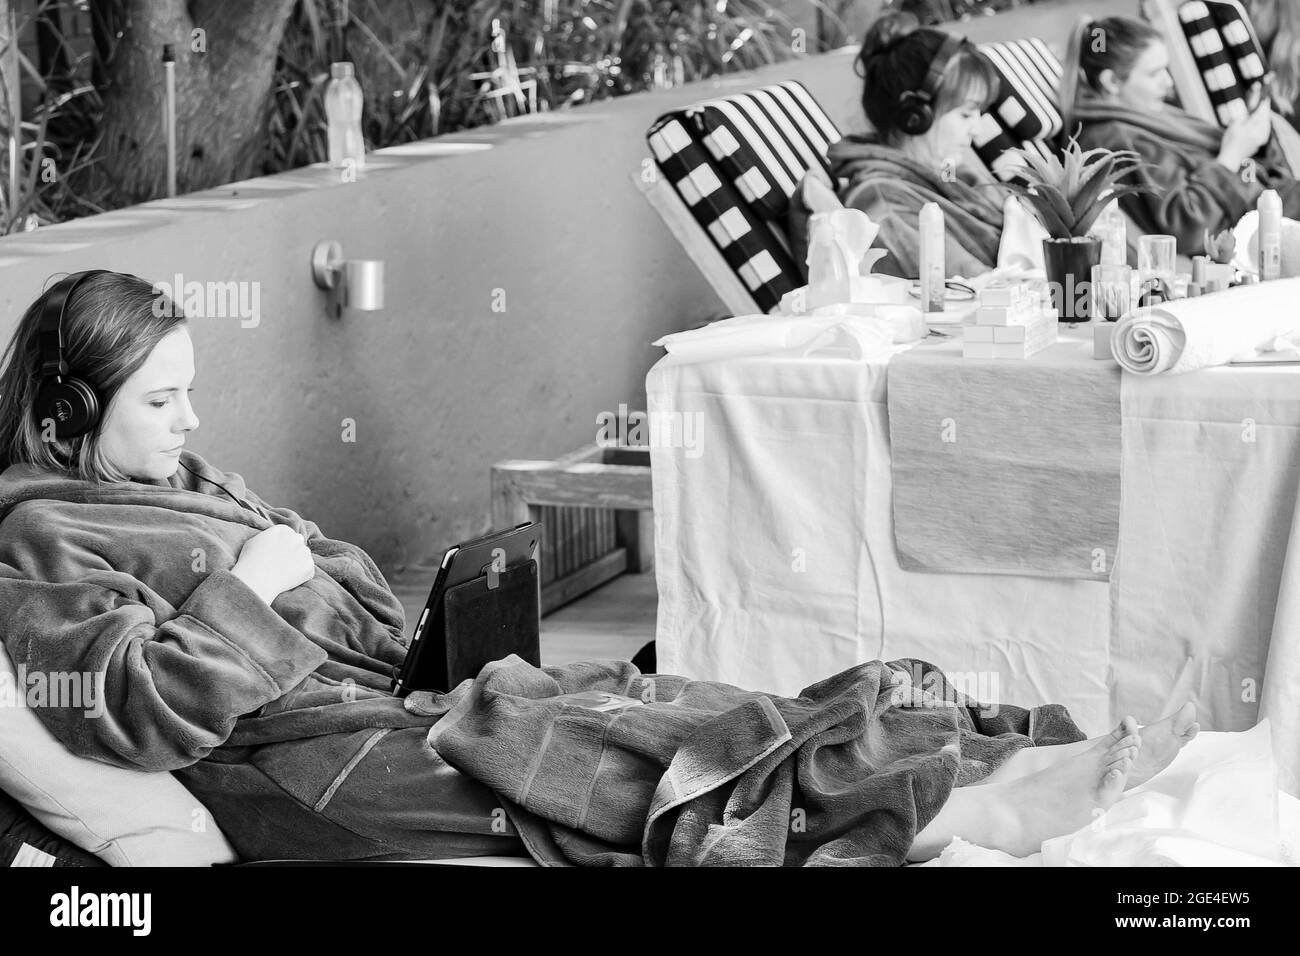 JOHANNESBURG, SÜDAFRIKA - 05. Jan 2021: Eine Graustufe einer Frau in einem Bademantel, die Streaming-Service auf einem Tablet-Computer in einem Spa-Resort beobachtet Stockfoto